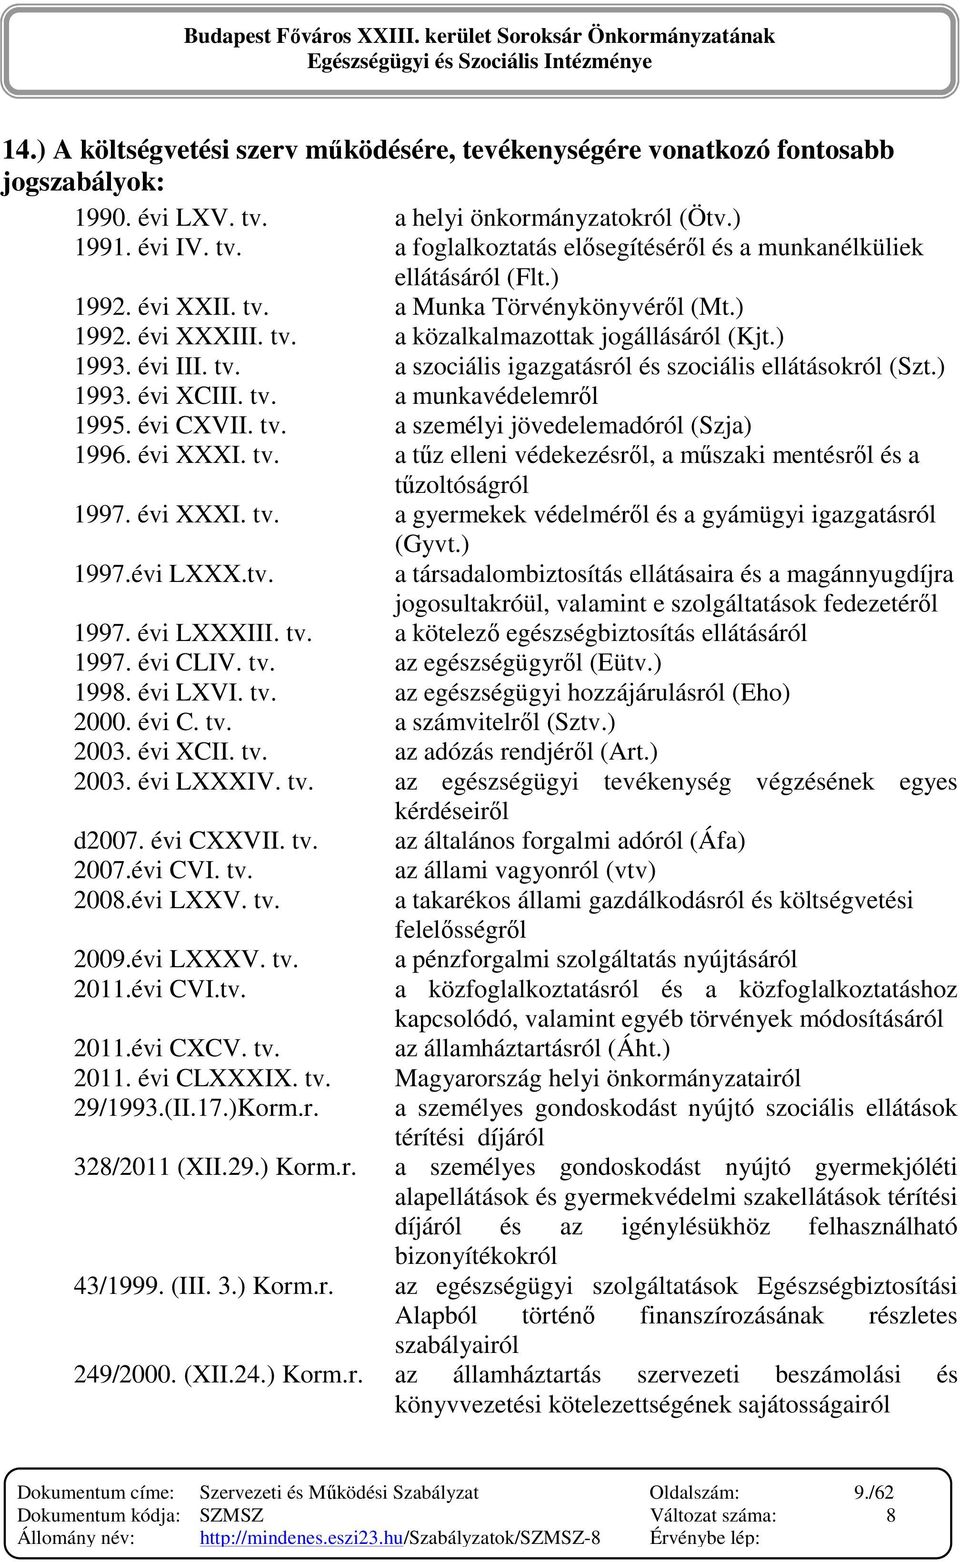 tv. a munkavédelemrıl 1995. évi CXVII. tv. a személyi jövedelemadóról (Szja) 1996. évi XXXI. tv. a tőz elleni védekezésrıl, a mőszaki mentésrıl és a tőzoltóságról 1997. évi XXXI. tv. a gyermekek védelmérıl és a gyámügyi igazgatásról (Gyvt.